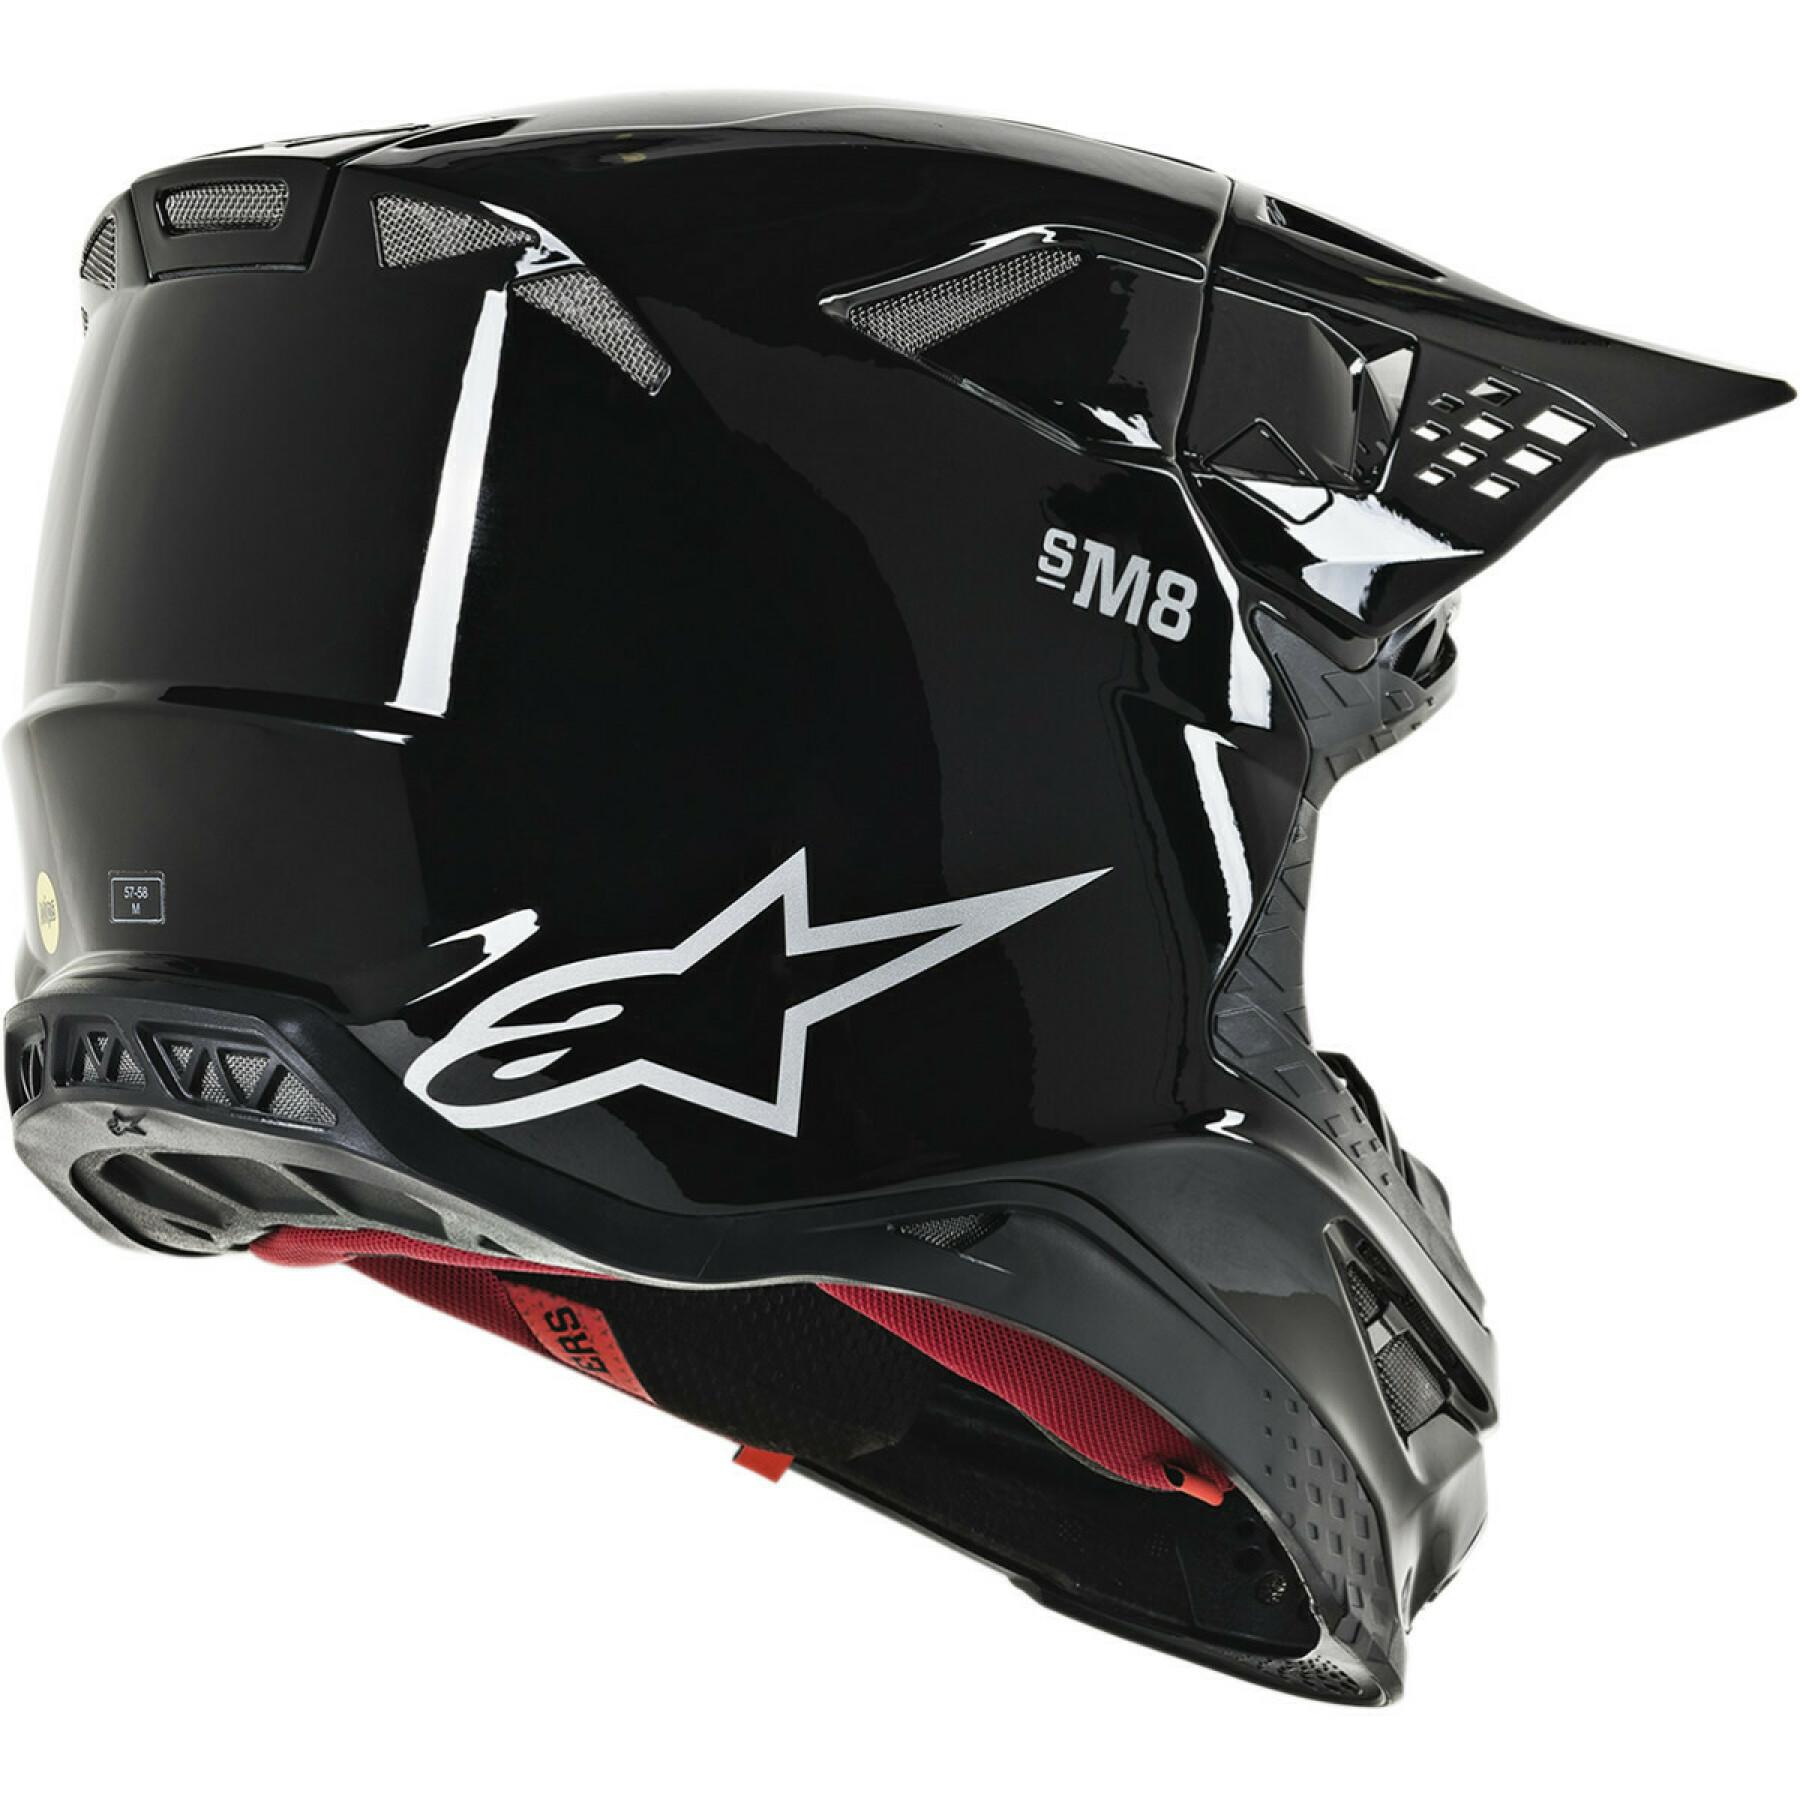 Motocrosshjälm Alpinestars SM8 solid black